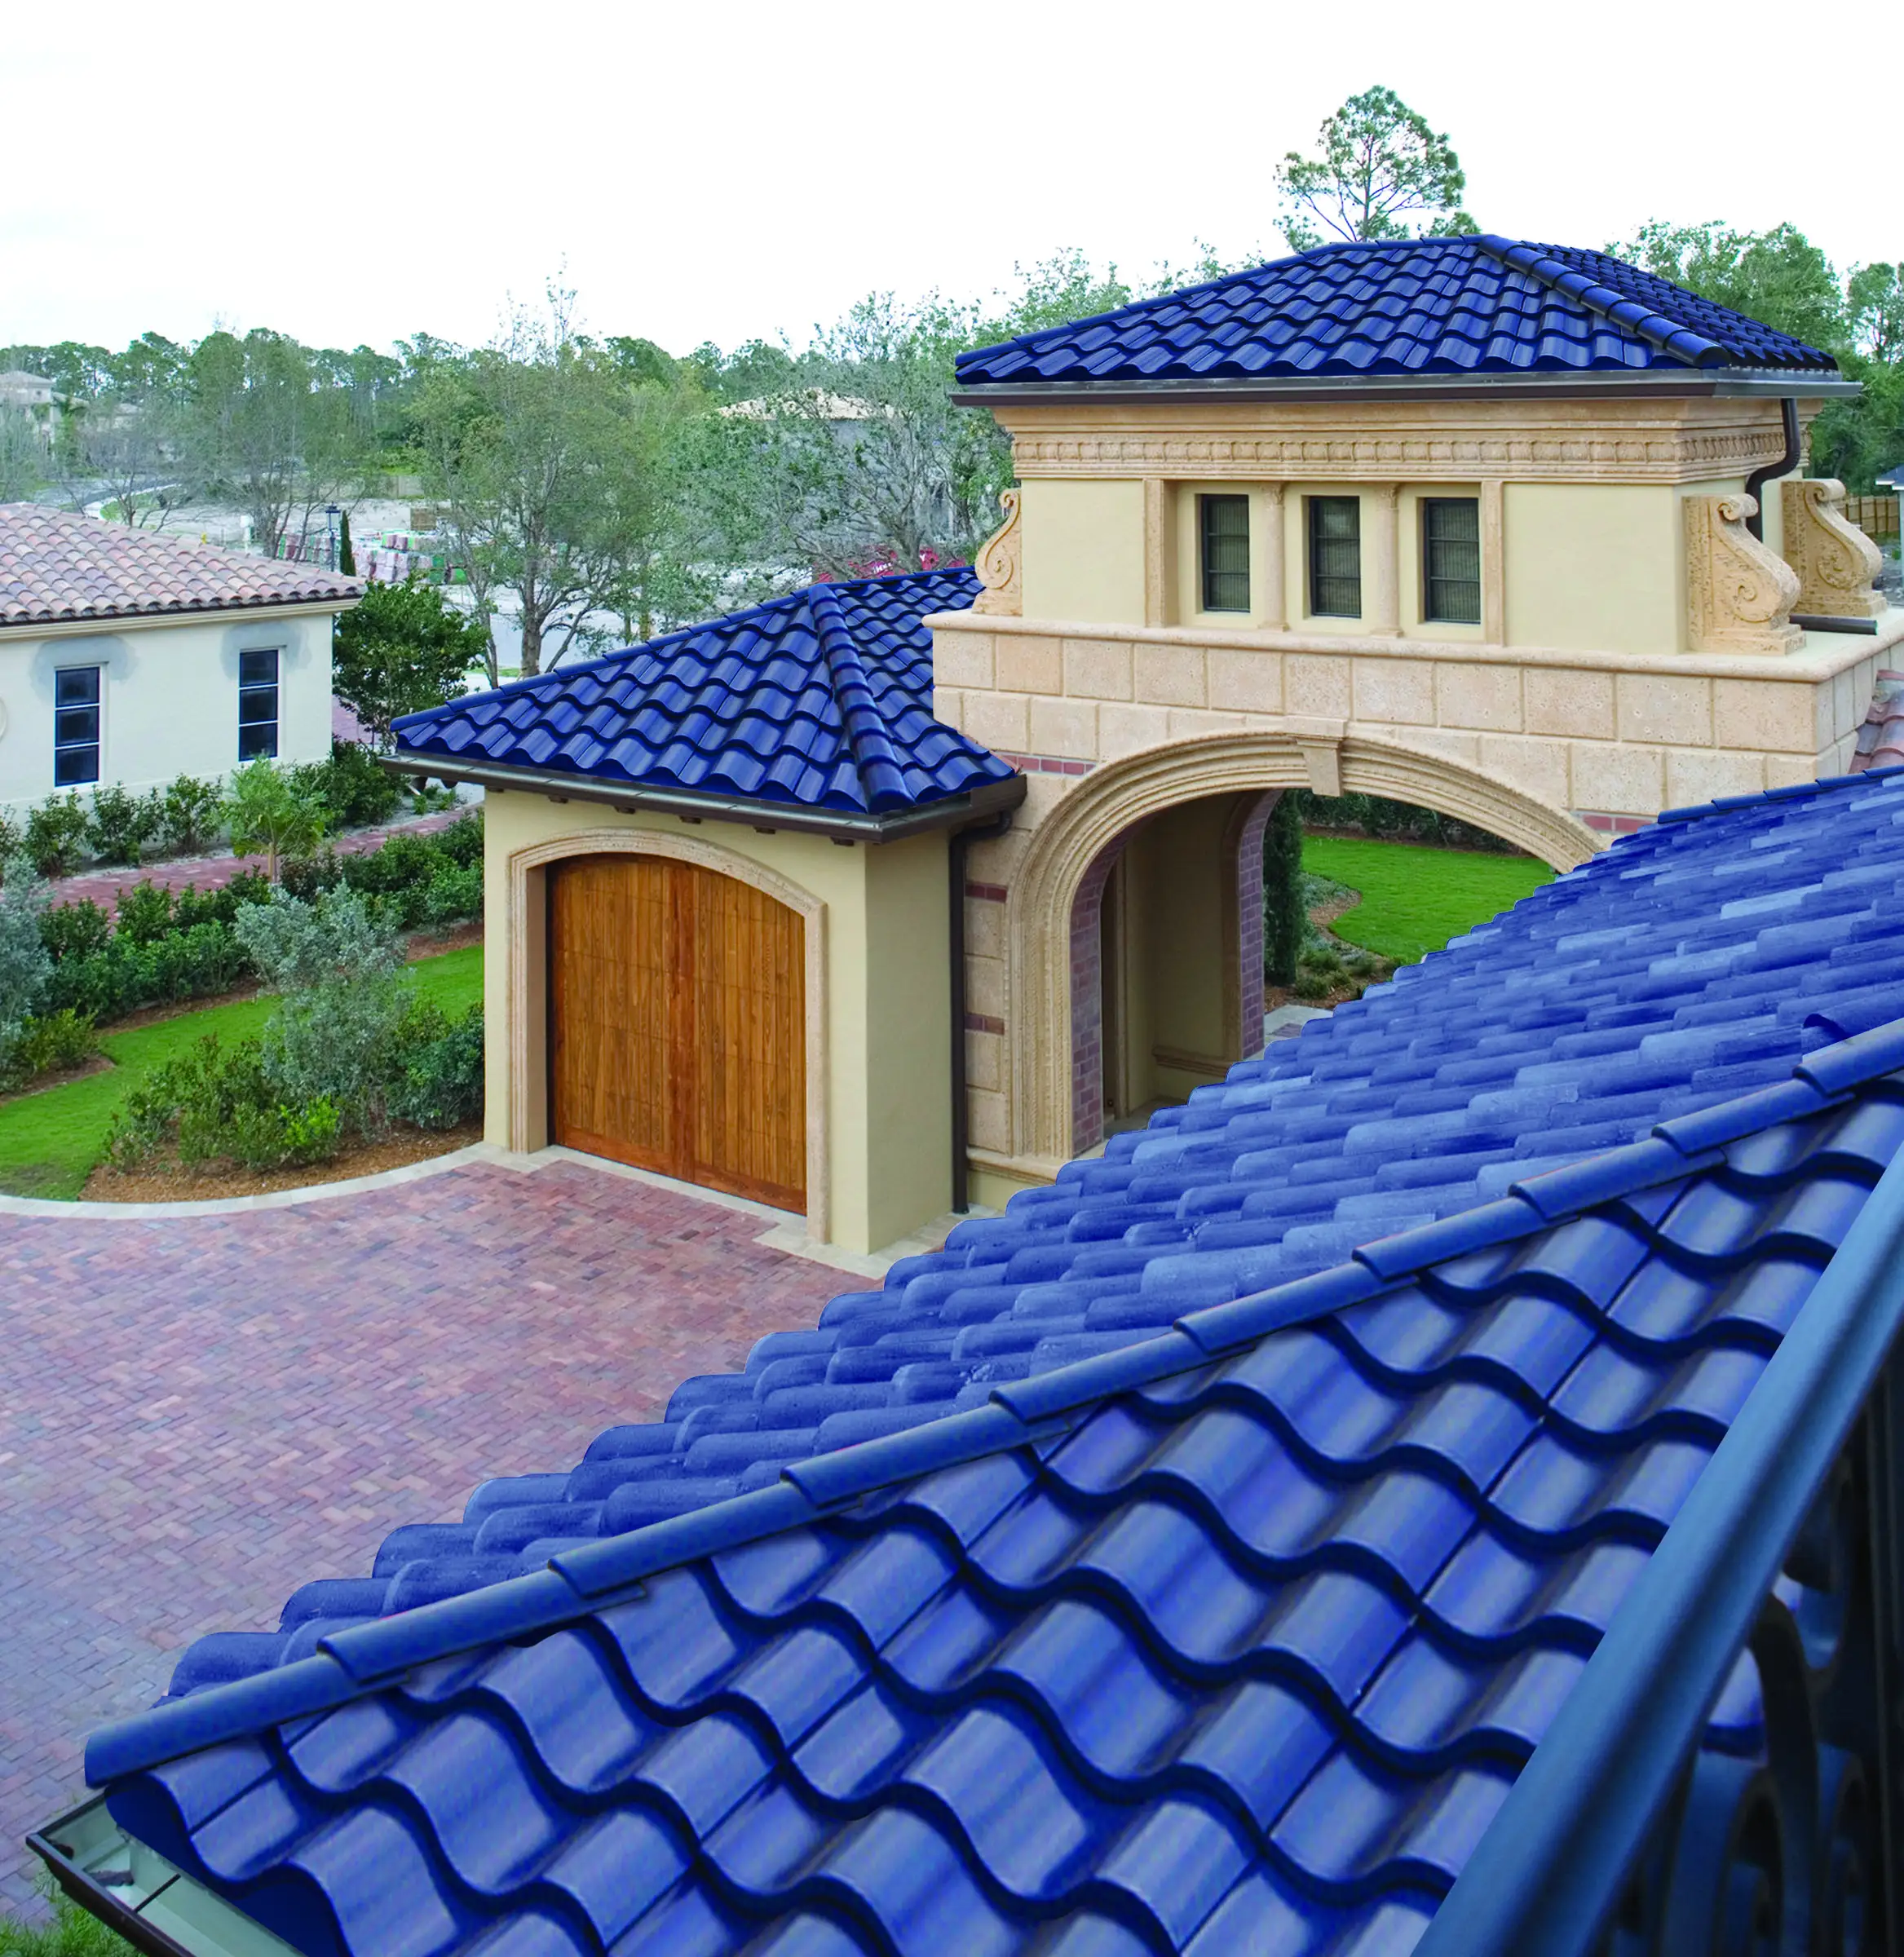 Yeni çatı 2020 kamboçya veranda çatı paneli ısıya dayanıklı renkli çatı kiremitleri malzemeleri